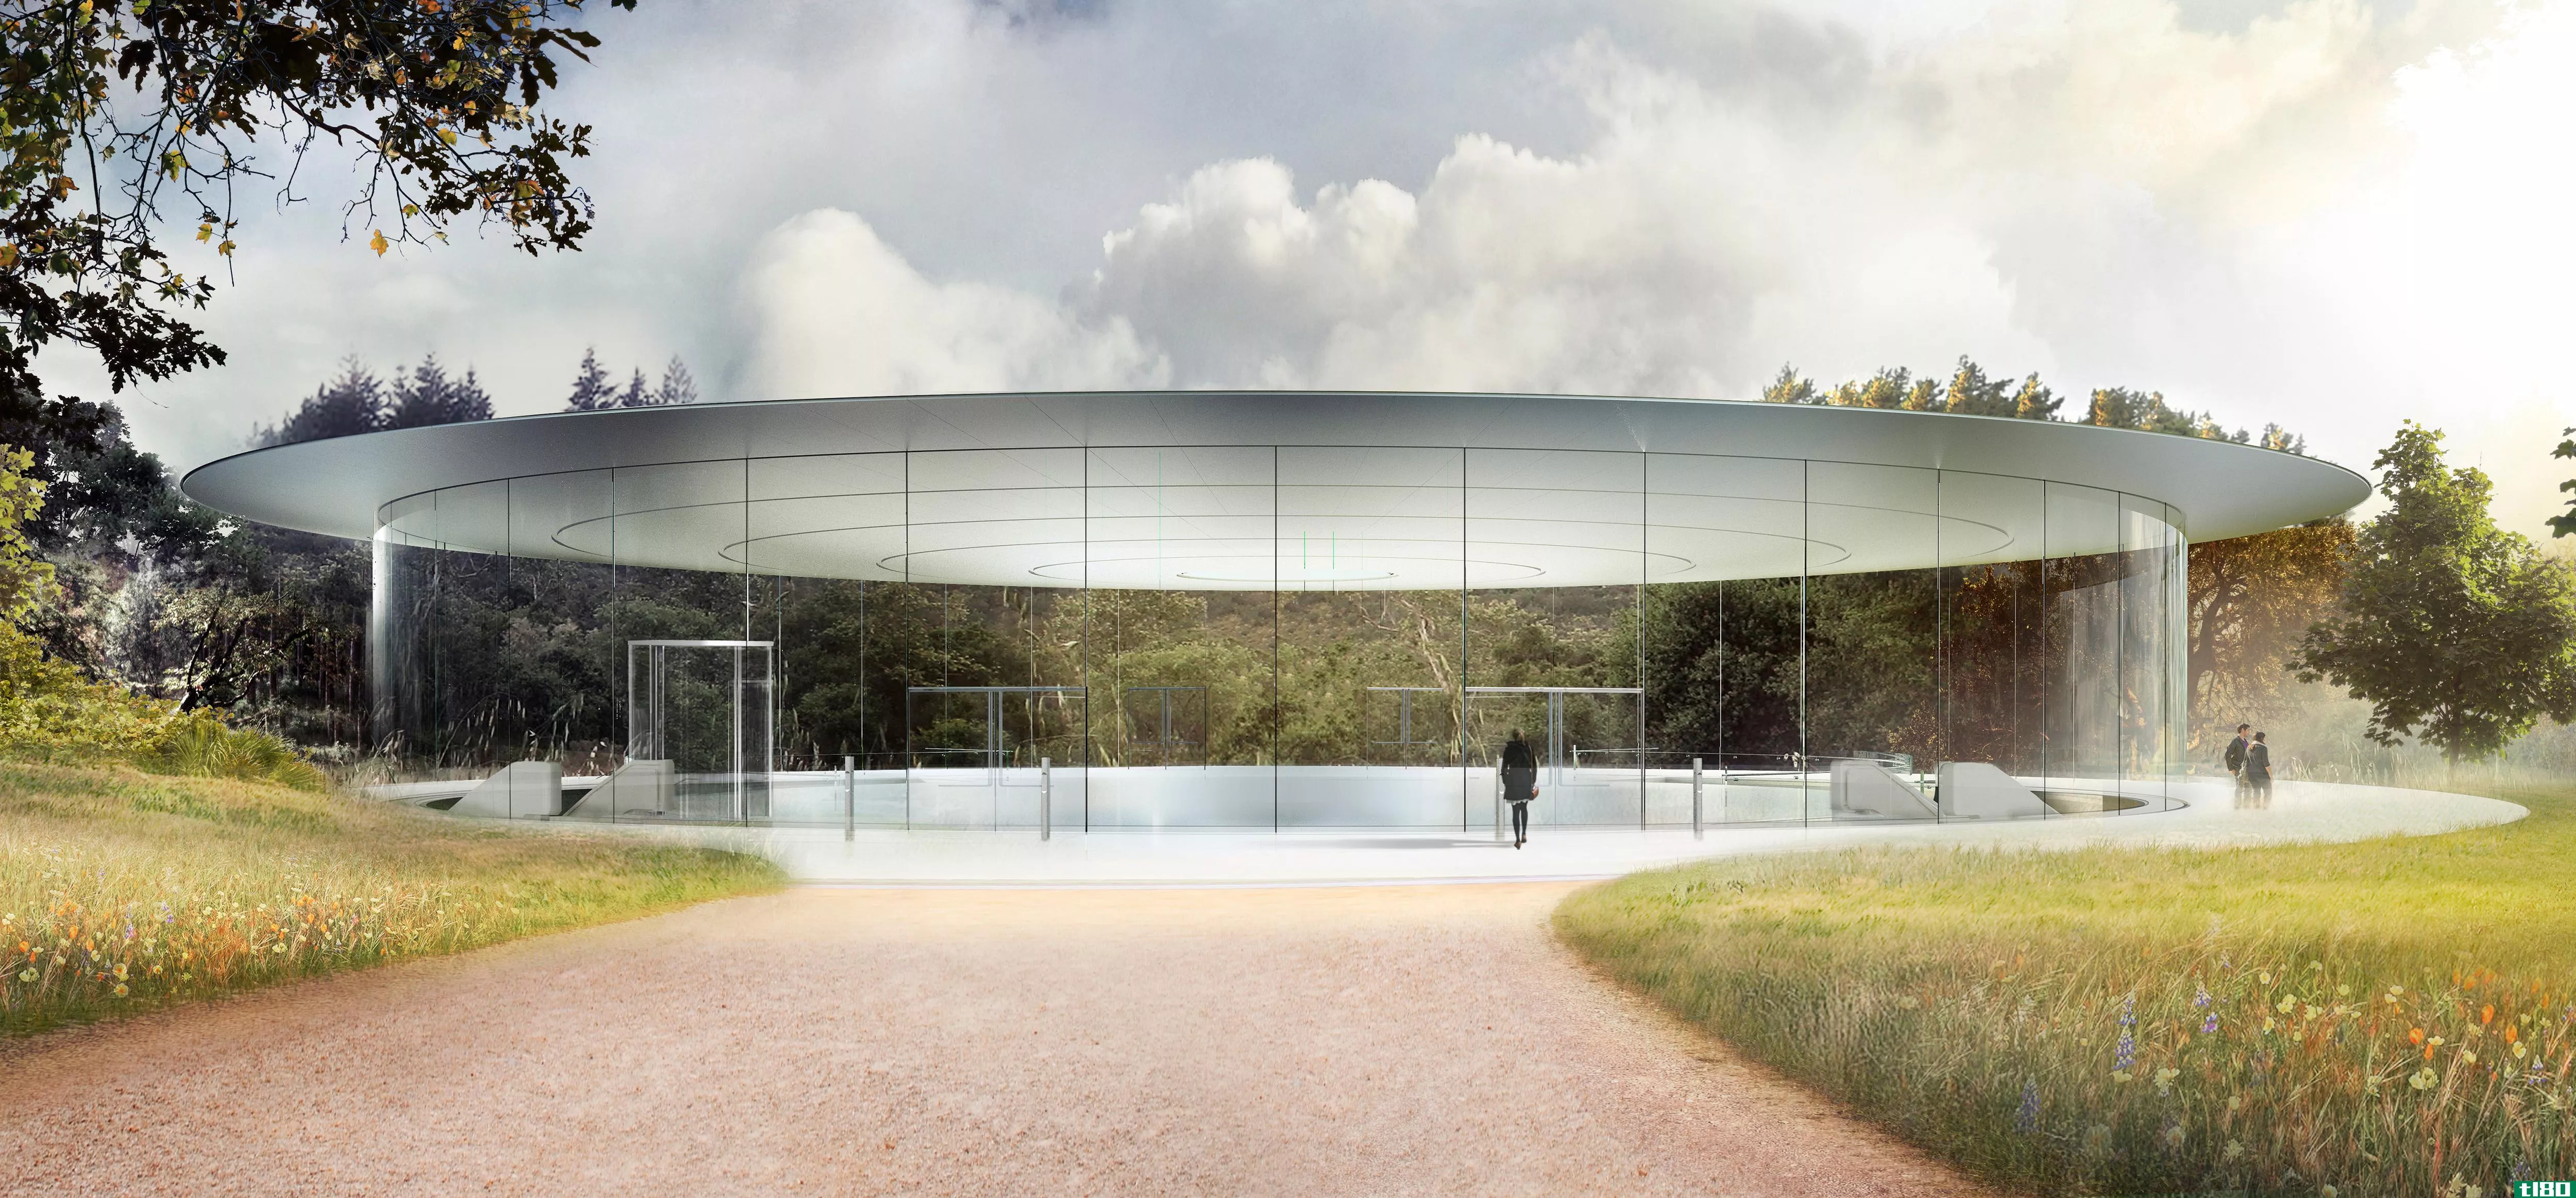 苹果的太空船园区苹果公园将于四月开放